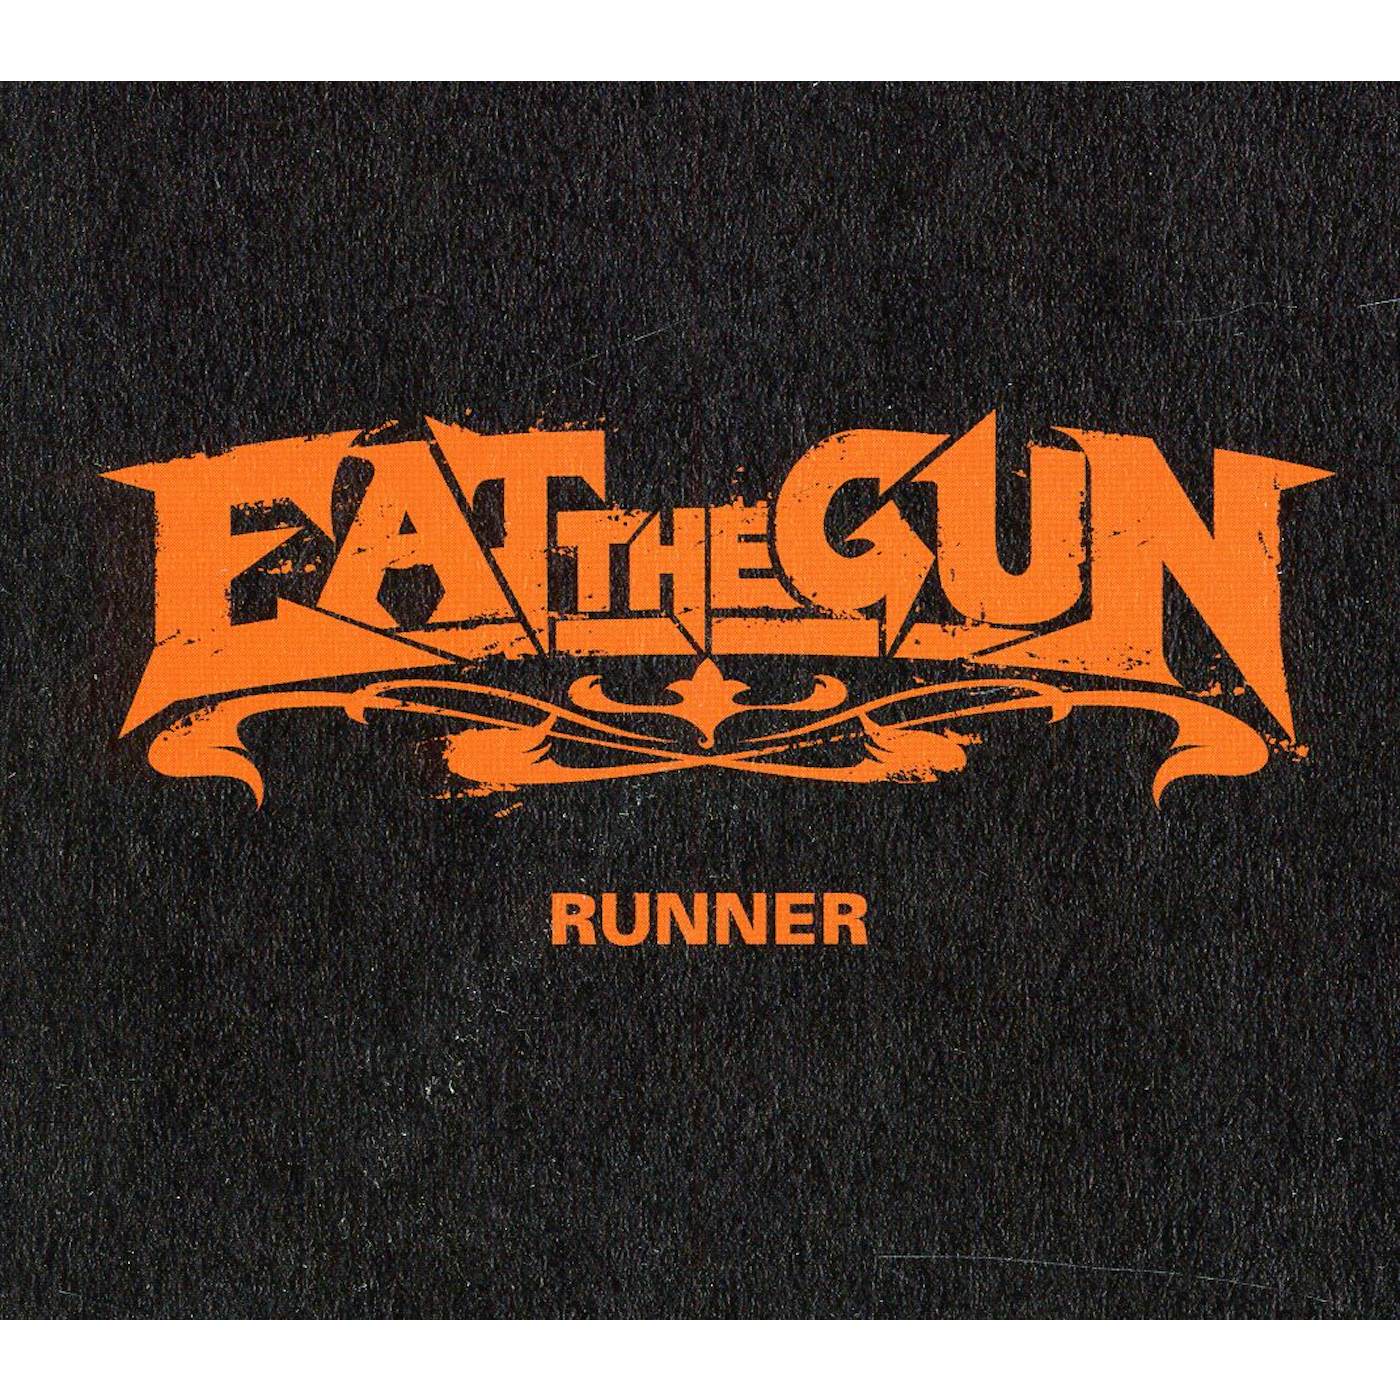 EAT THE GUN RUNNER CD